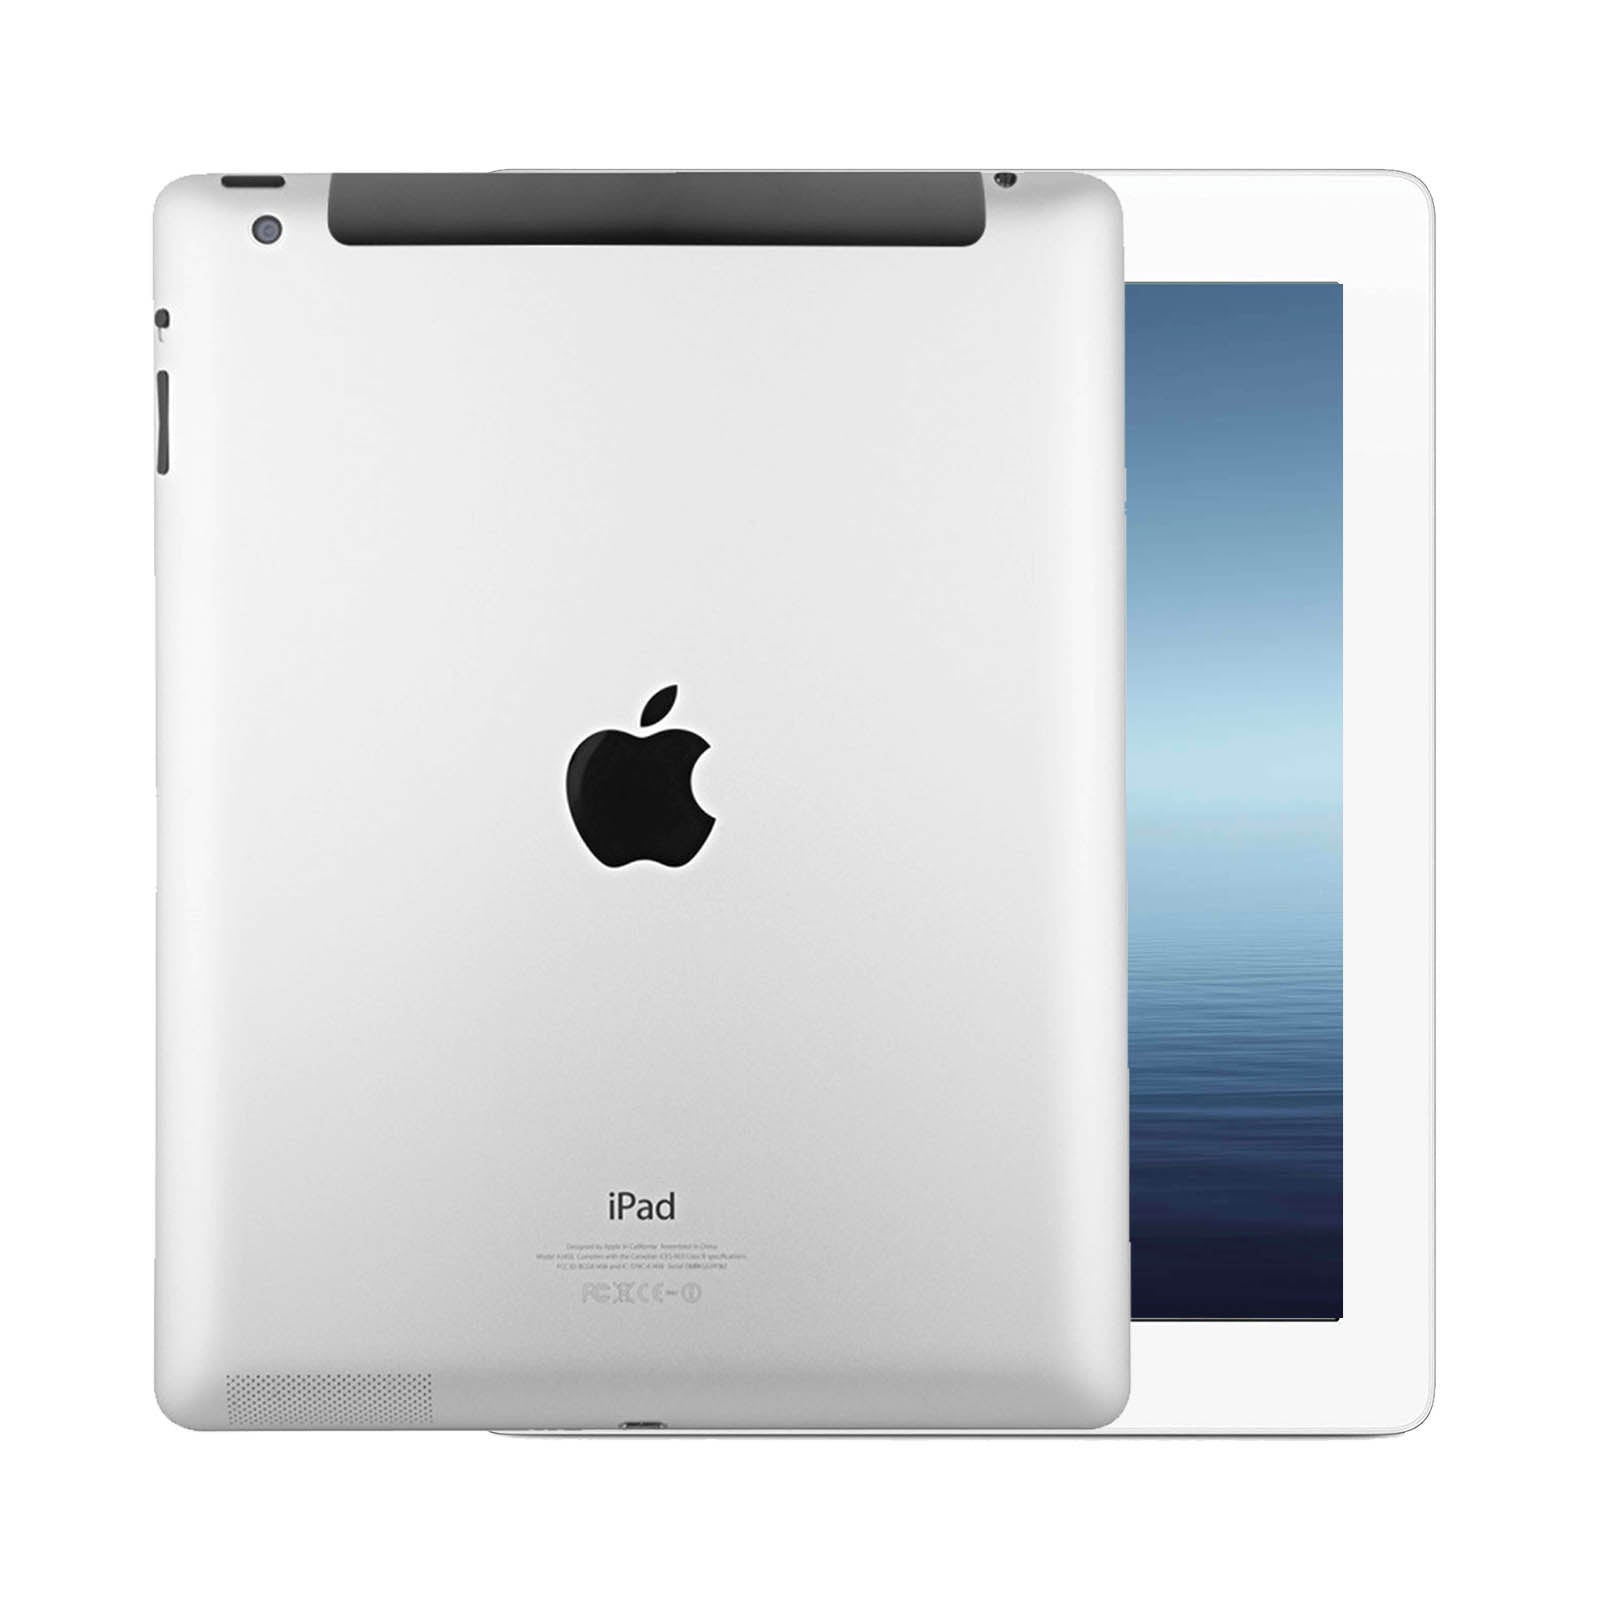 Apple iPad 3 16GB White Good - Unlocked